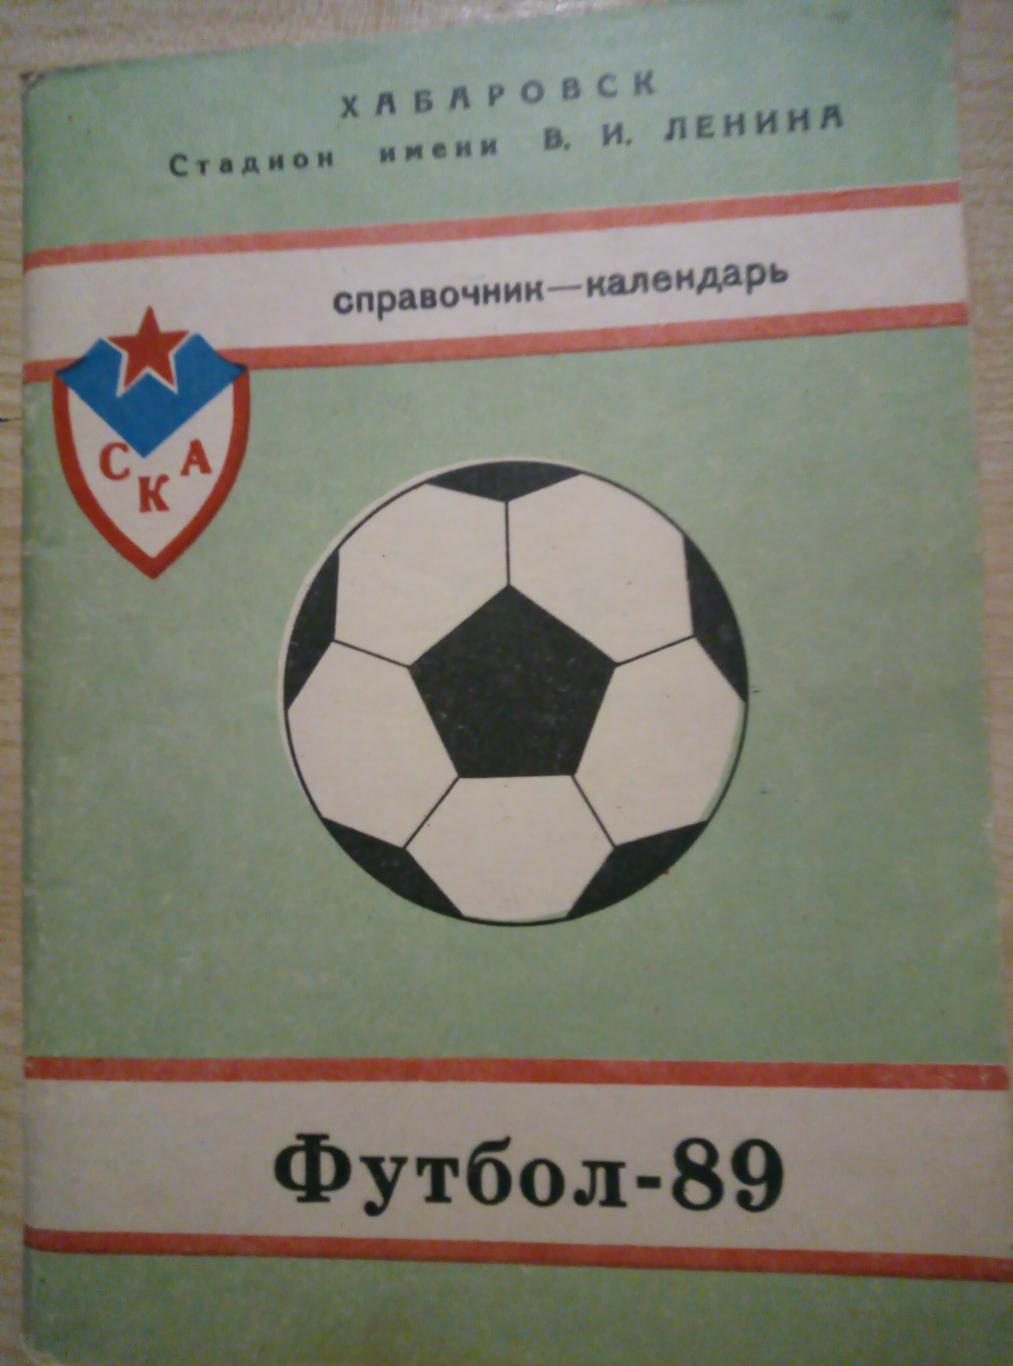 Календарь Справочник Хабаровск - 1989